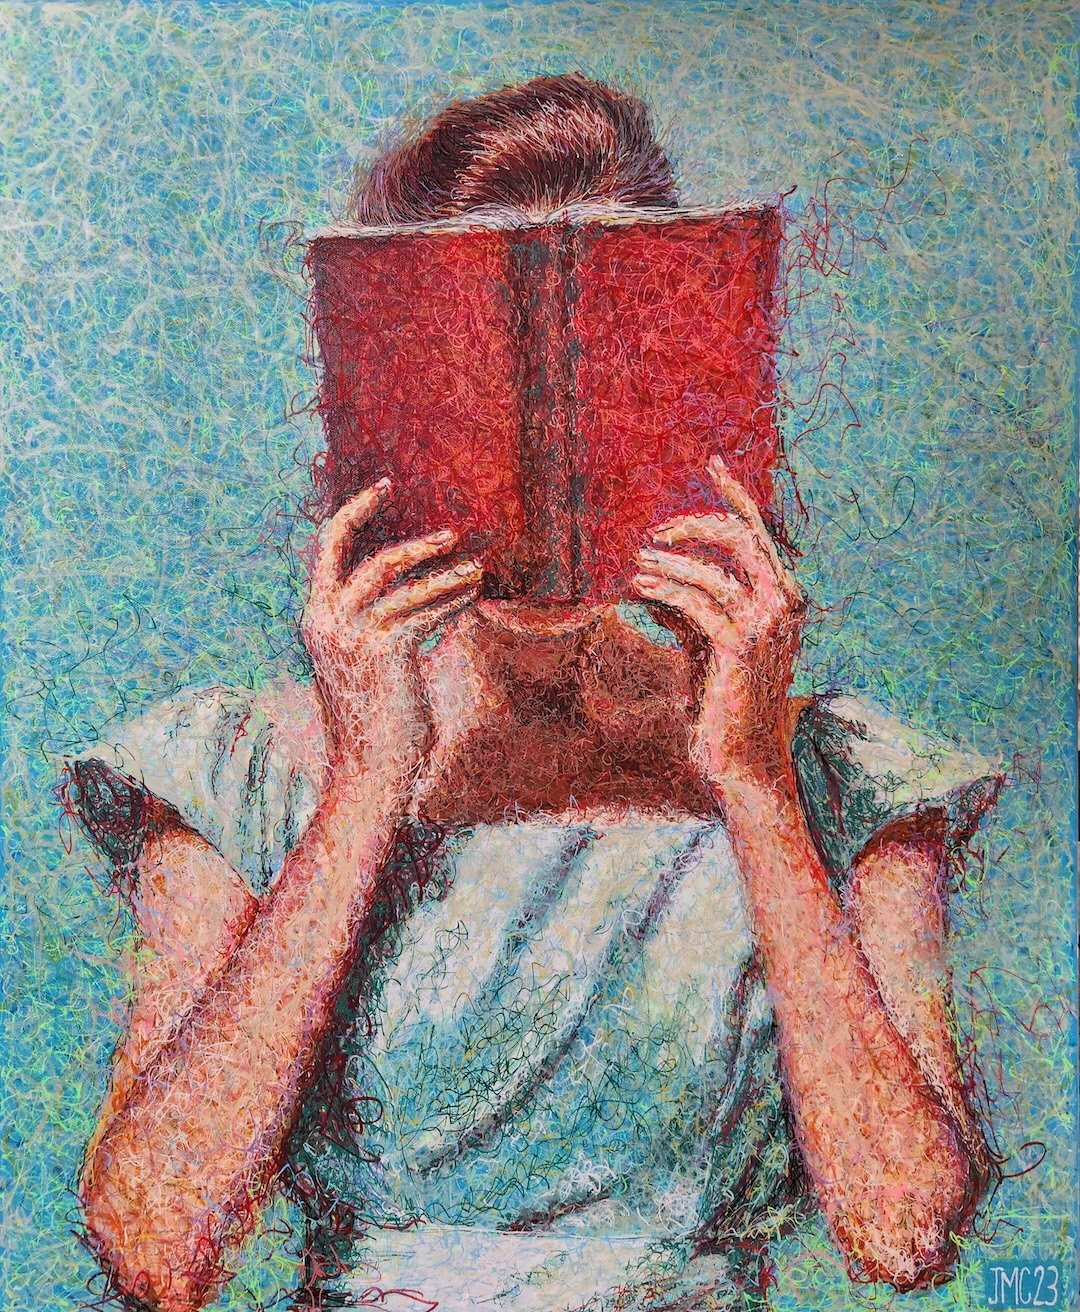    The Reader  , 30” x 24”, acrylic on canvas 